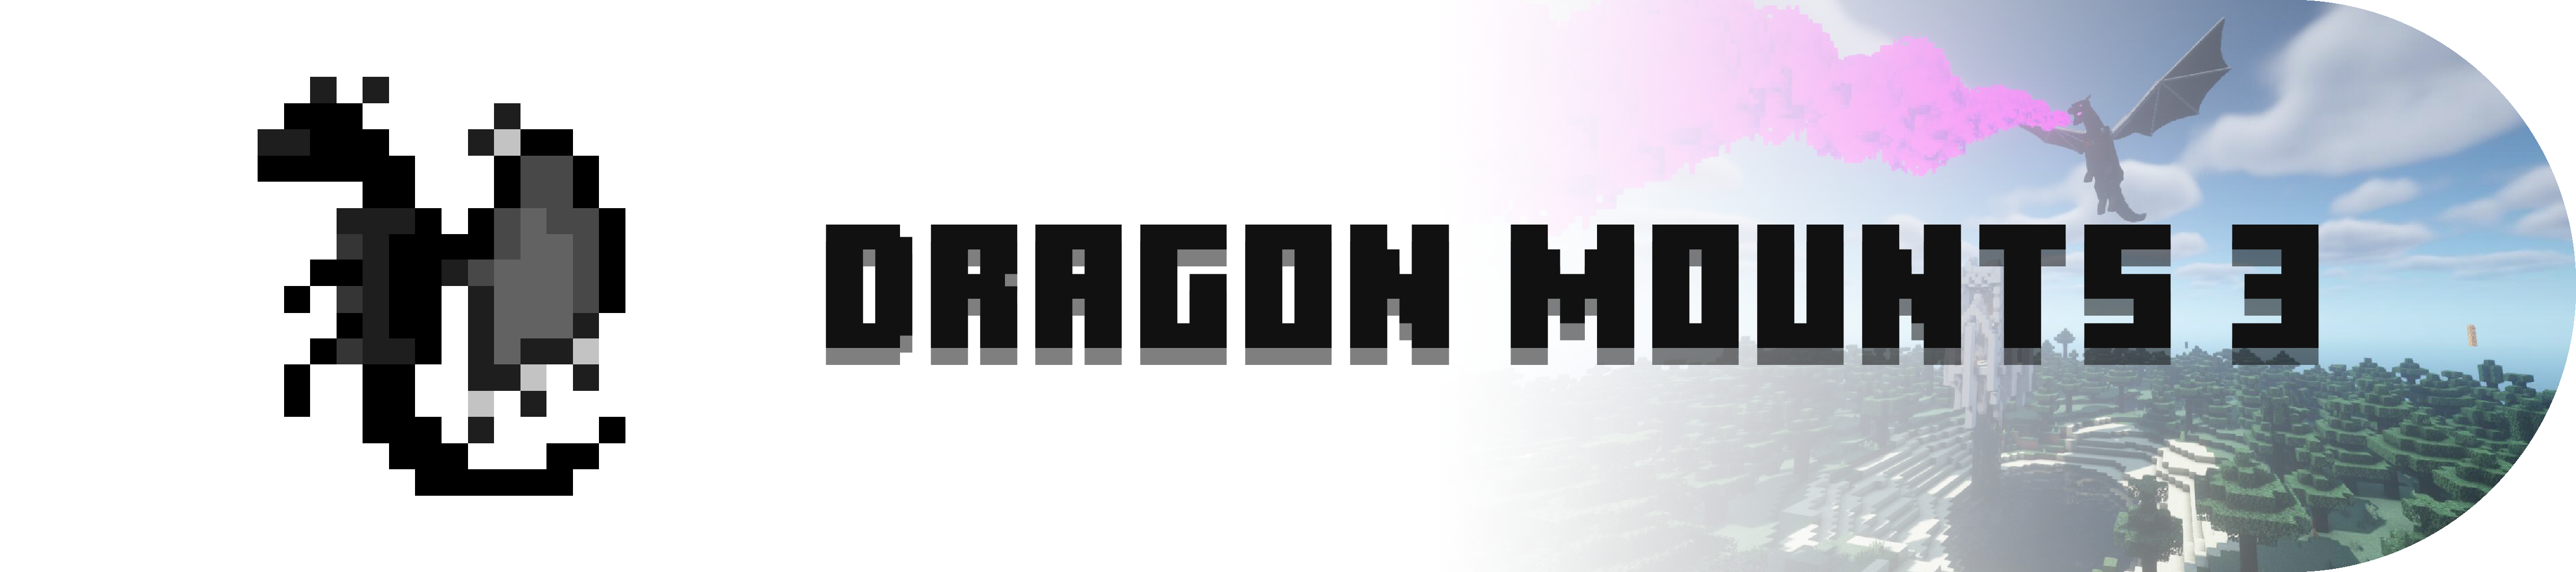 Dragon Mounts 3 Logo